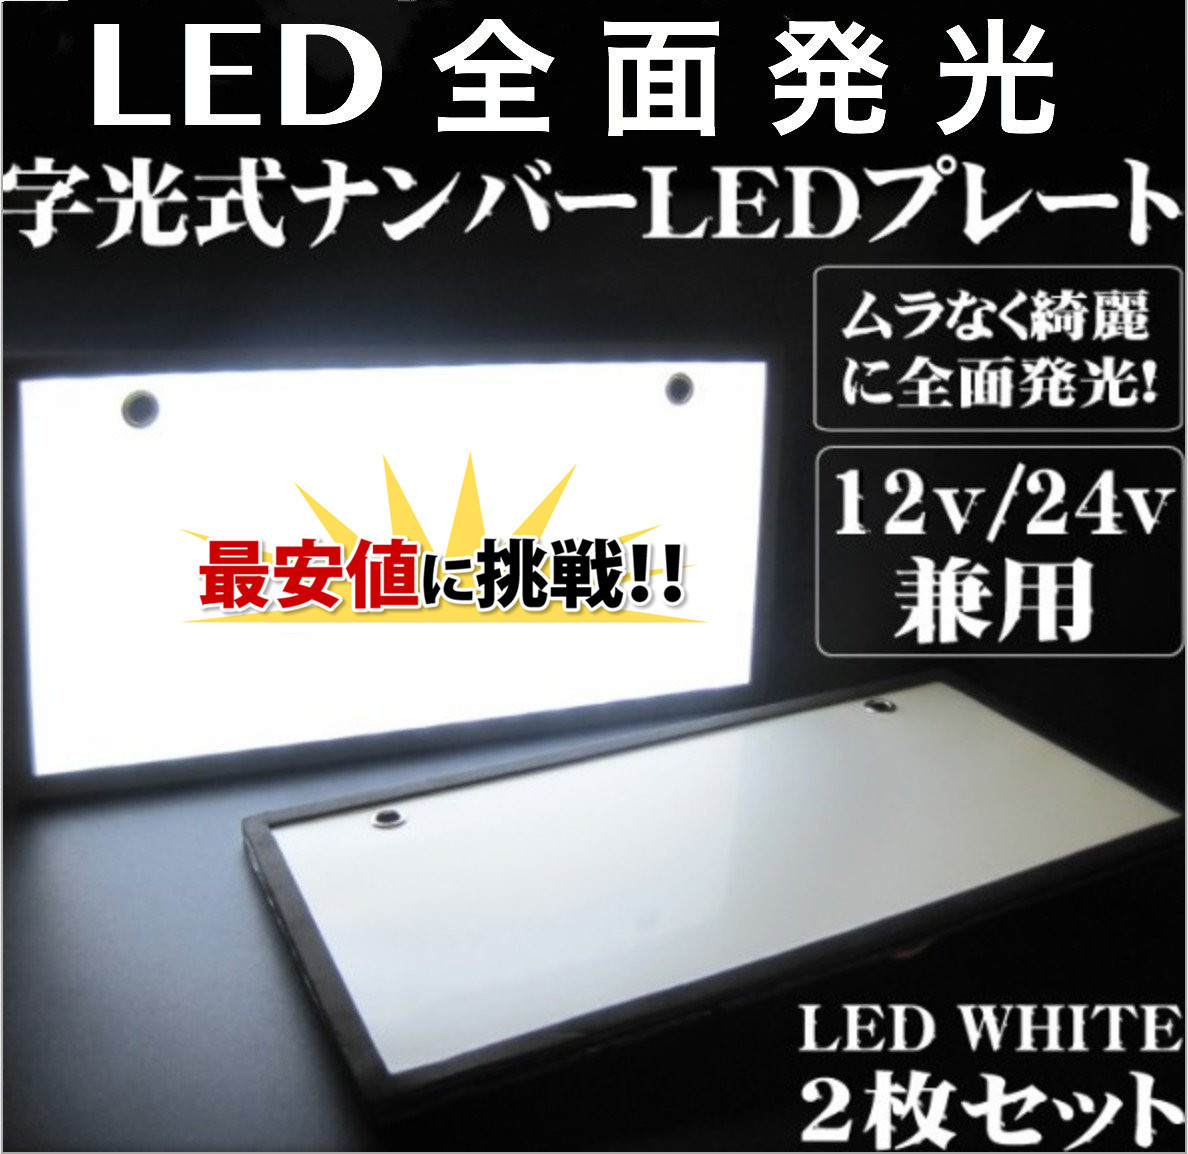 字光式 LED ナンバープレート 2枚 セット 極薄8mm 全面発光 超高輝度 12V 24V 兼用 フレーム パネル_画像1